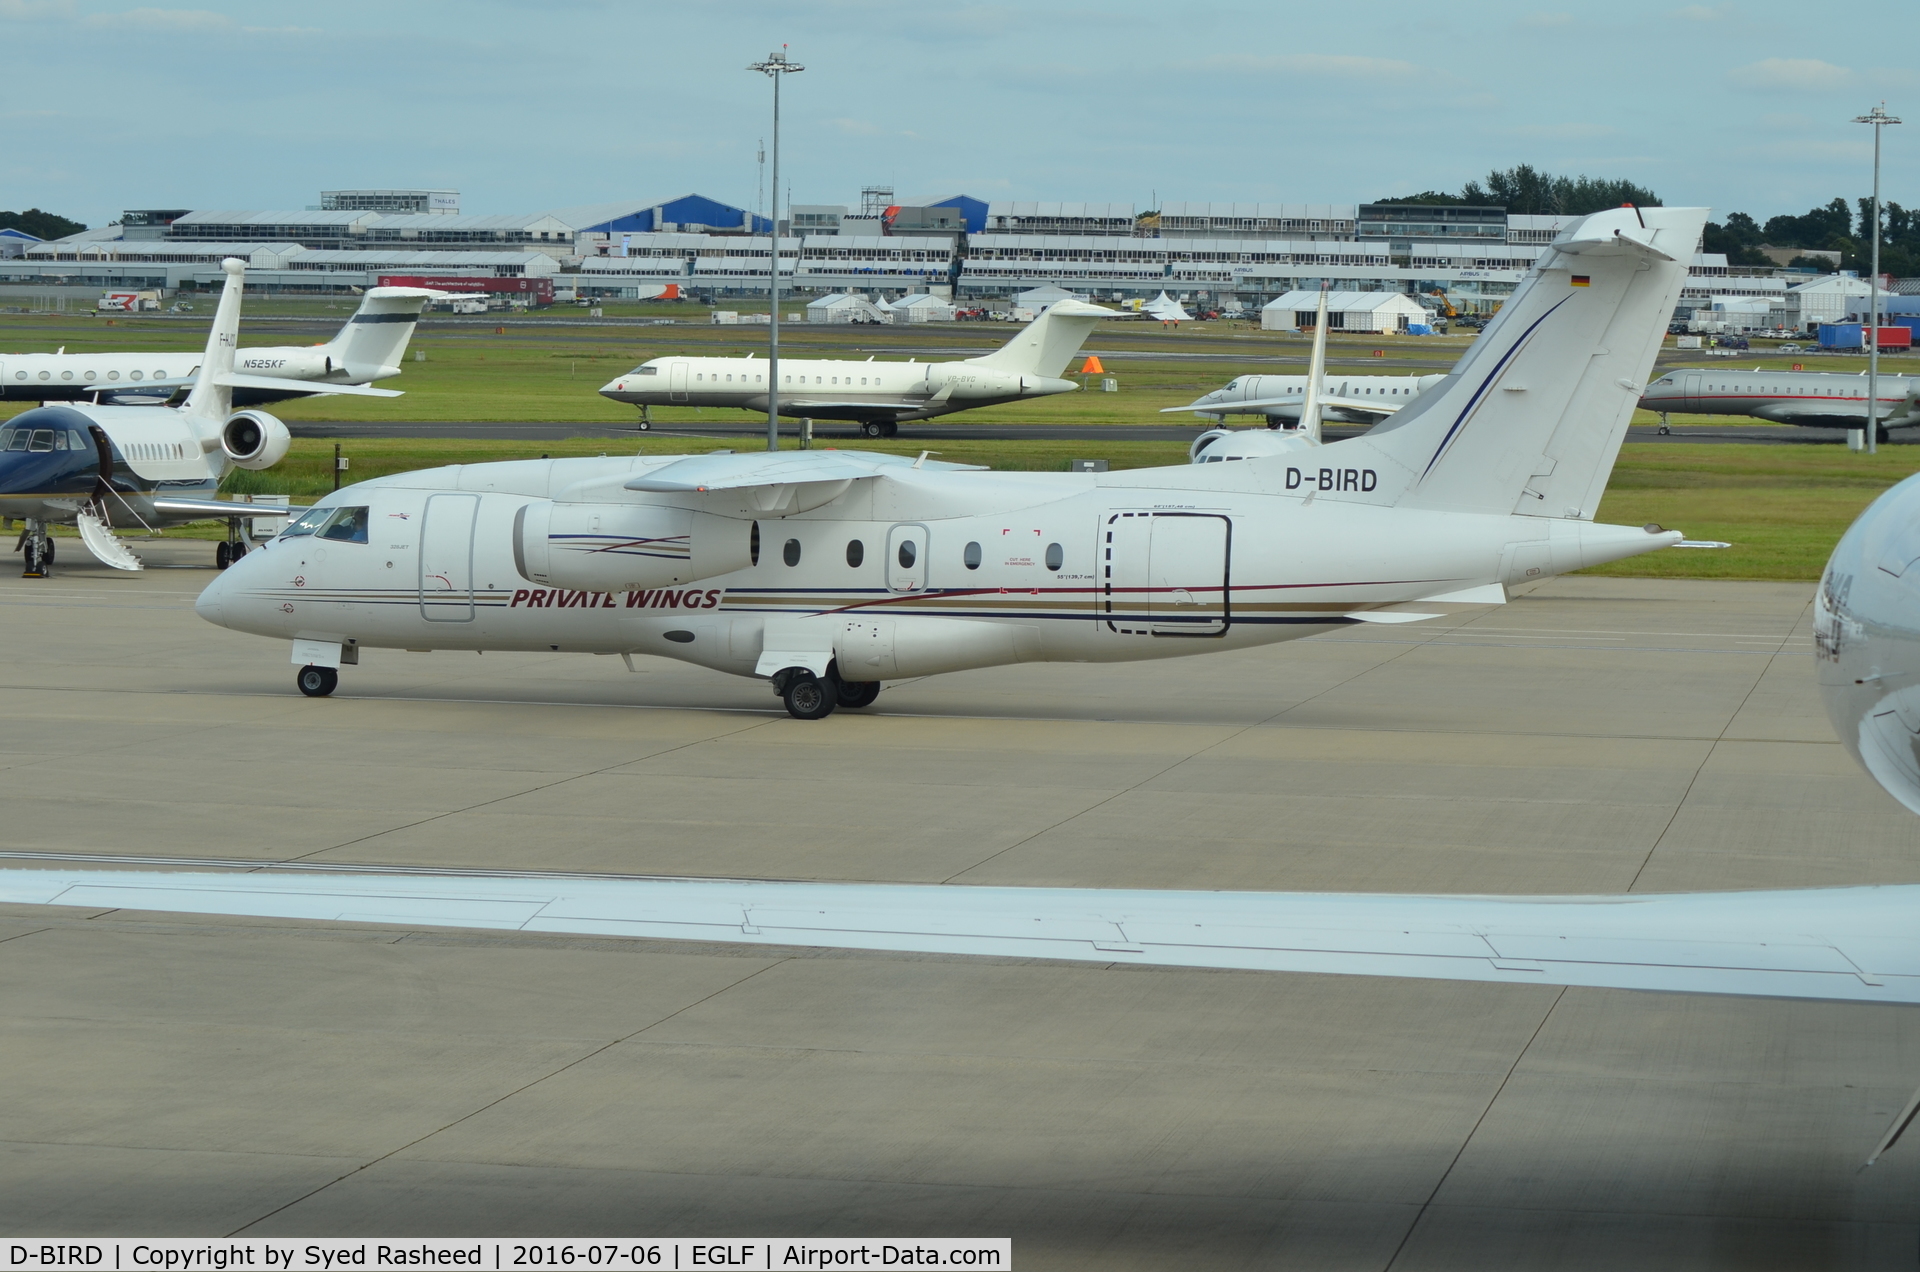 D-BIRD, 2001 Dornier Do328-310Jet C/N 3180, Dornier arrival at EGLF